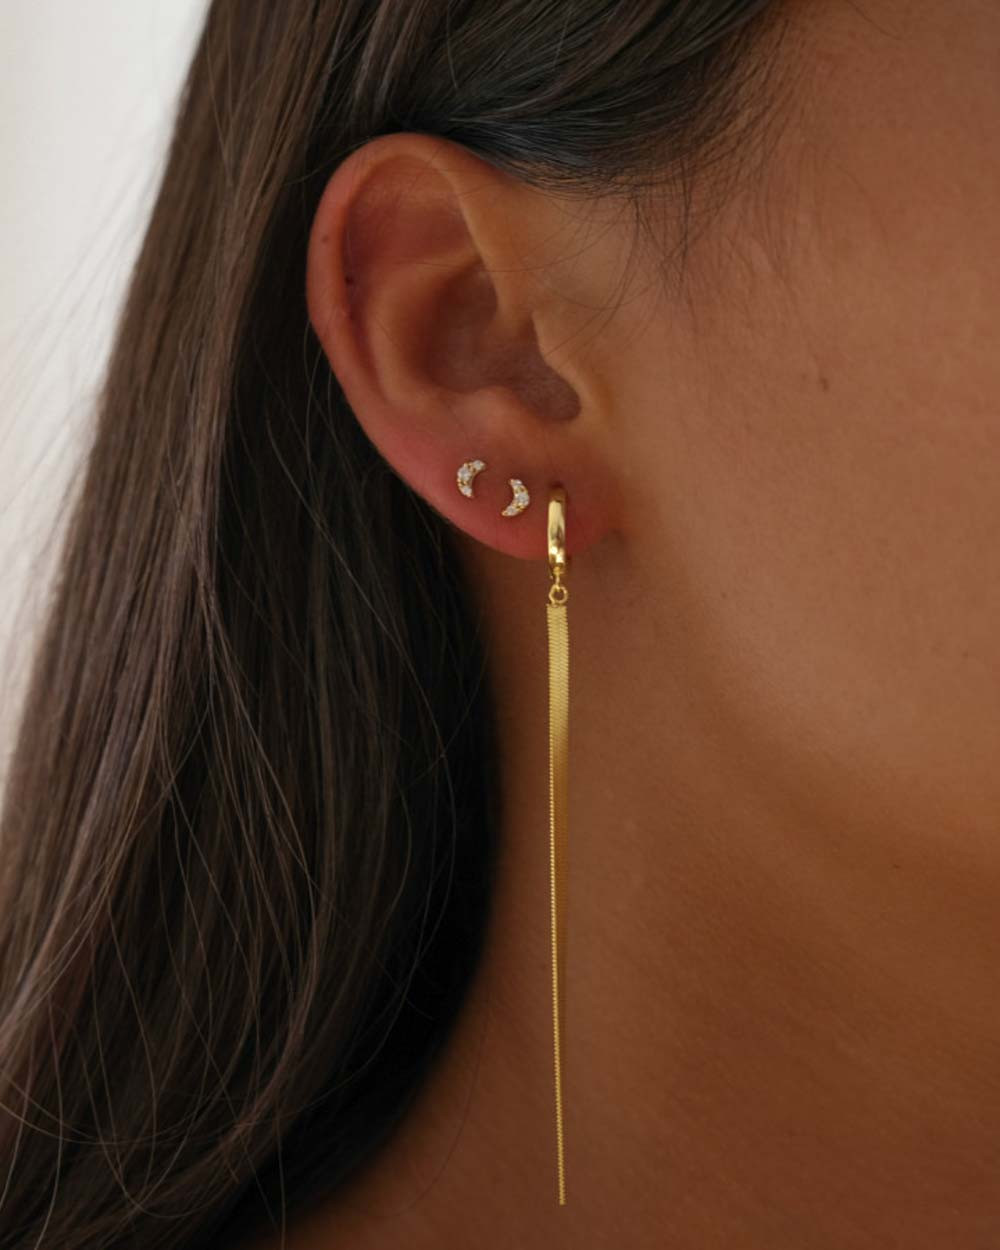 Earrings: Italian Baroque style gold hoop earrings.